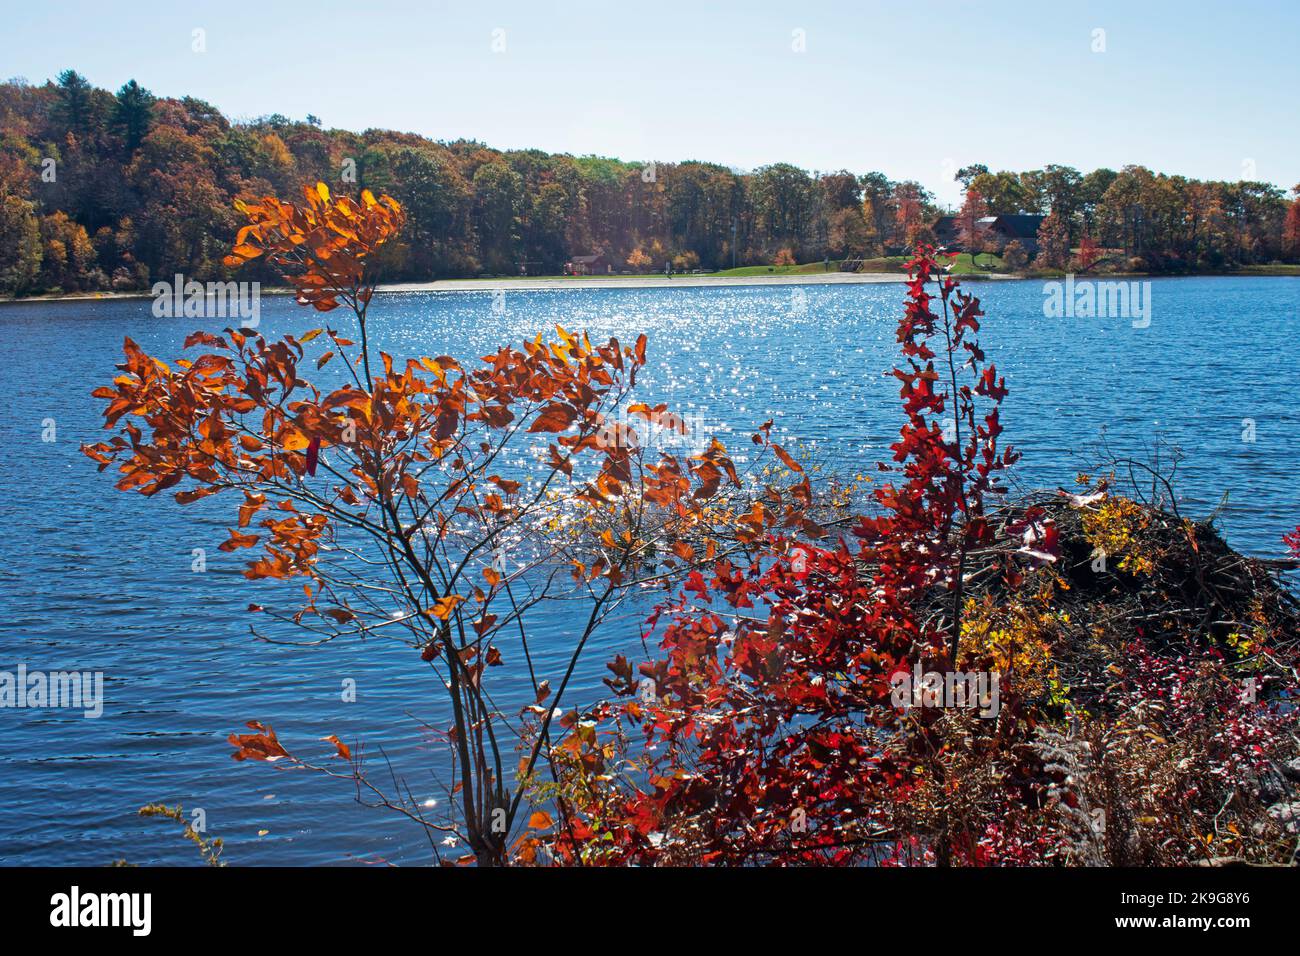 Le lac Marcia du parc national de High point du New Jersey, lors d'une journée d'automne ensoleillée, entouré d'une végétation luxuriante -05 Banque D'Images